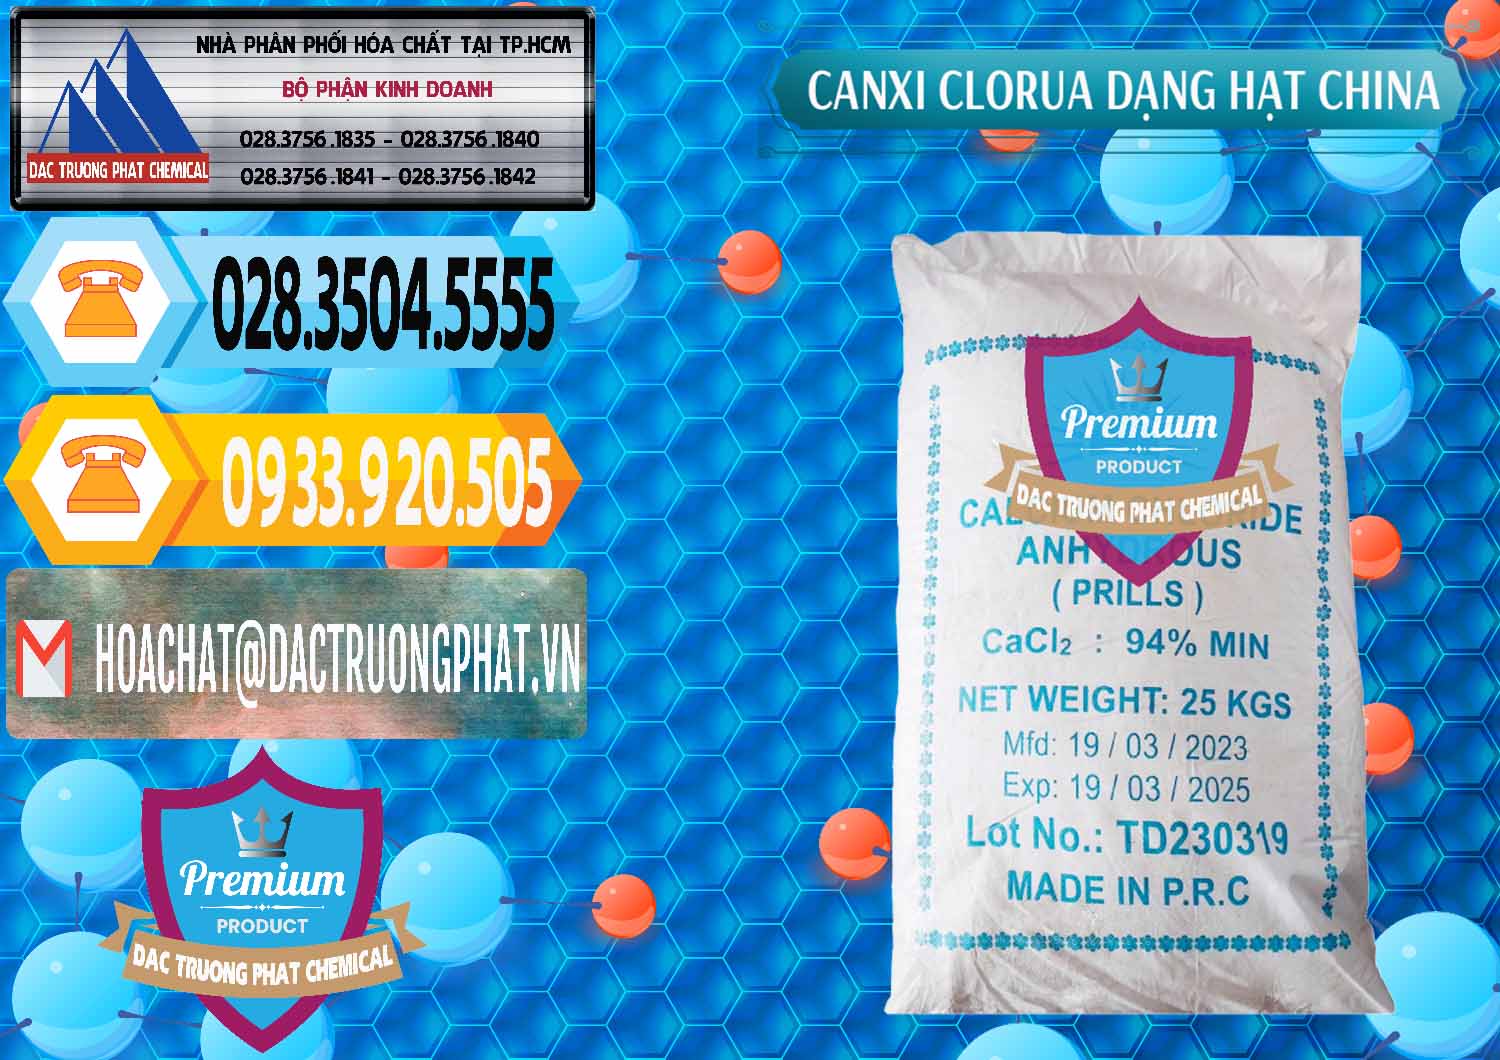 Công ty bán _ cung ứng CaCl2 – Canxi Clorua 94% Dạng Hạt Trung Quốc China - 0373 - Cty phân phối _ cung ứng hóa chất tại TP.HCM - hoachattayrua.net